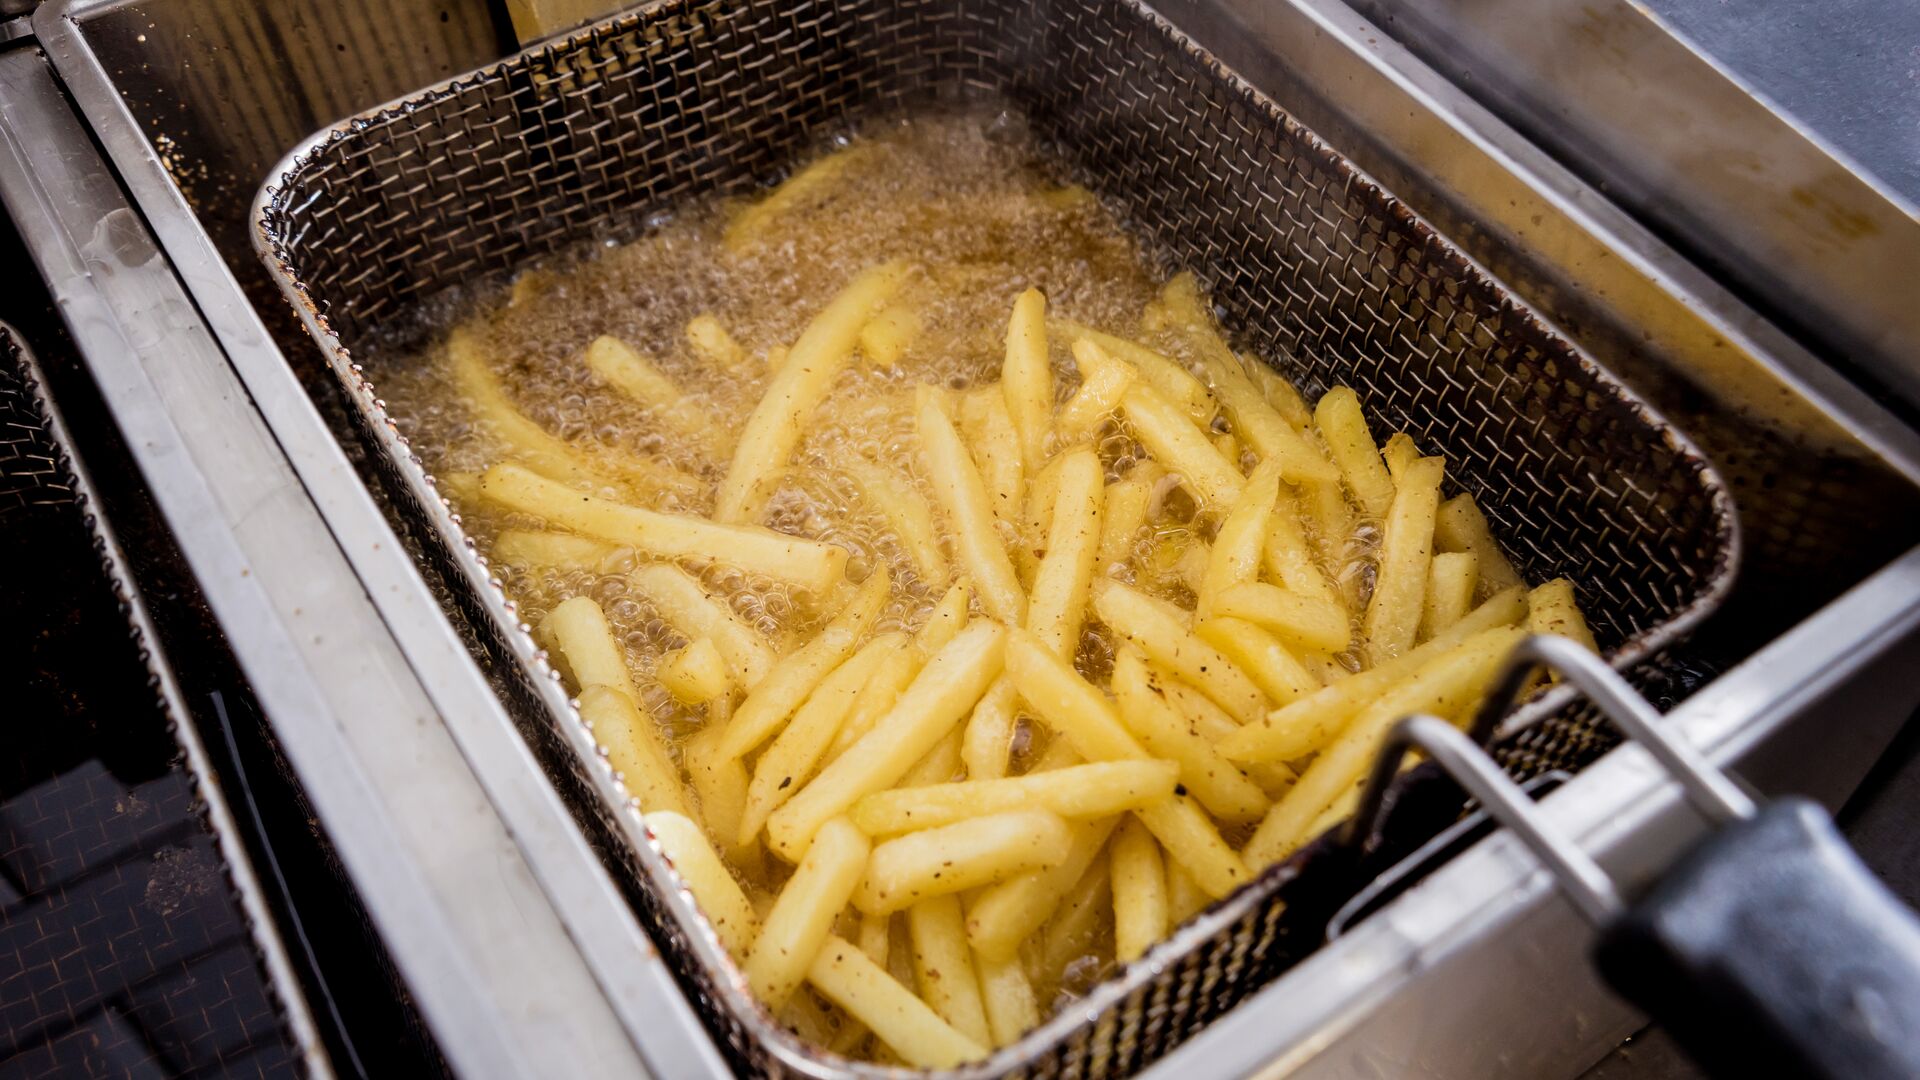 Nettoyer la friteuse : 8 astuces et méthodes efficaces